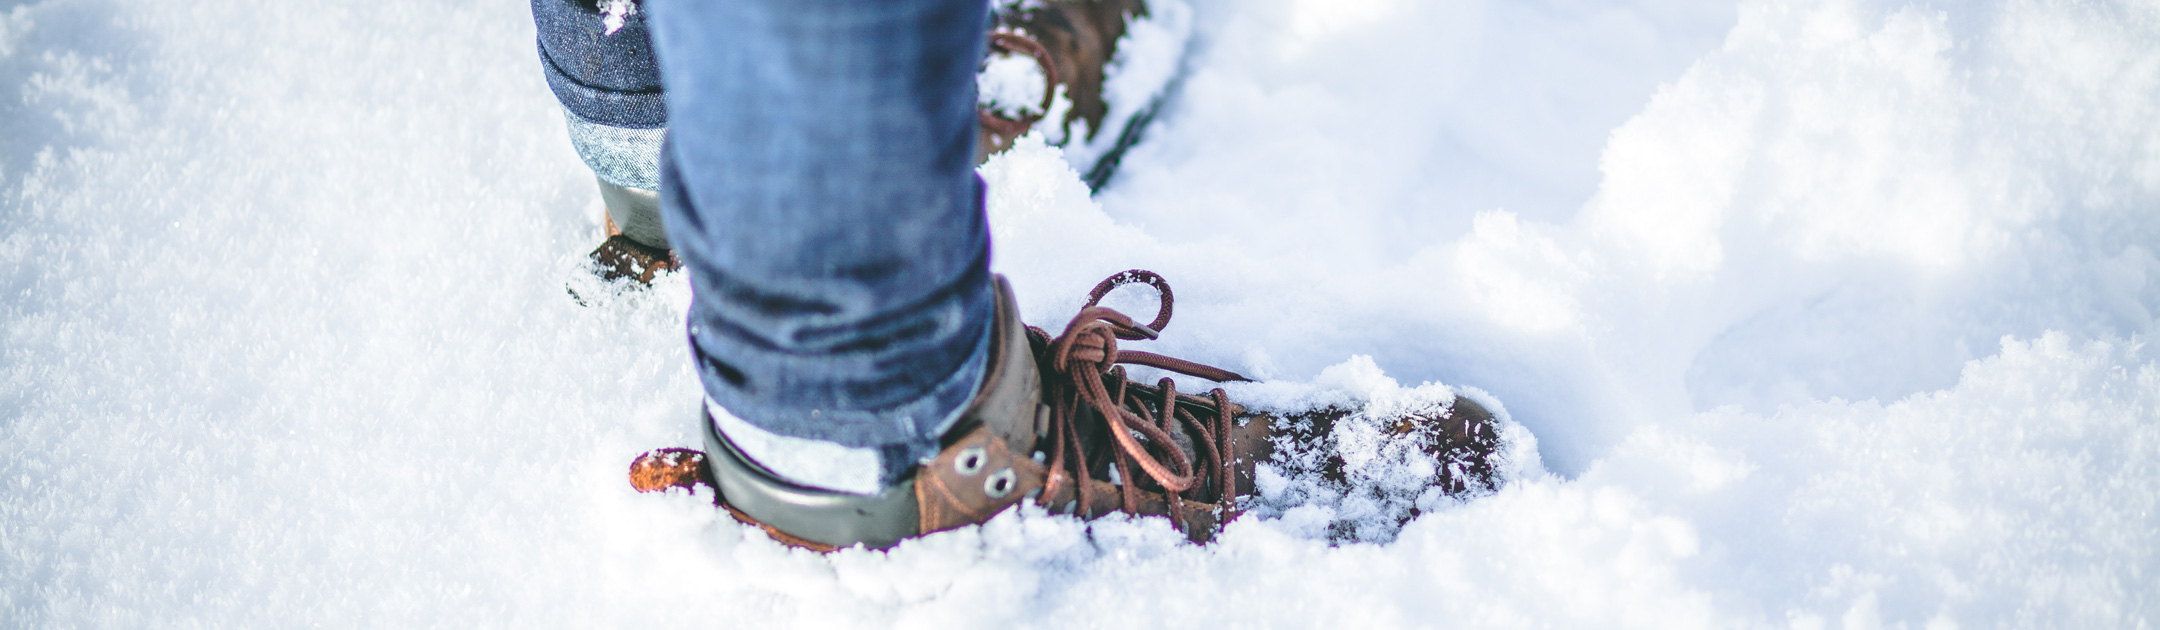 Tipps gegen kalte Füße